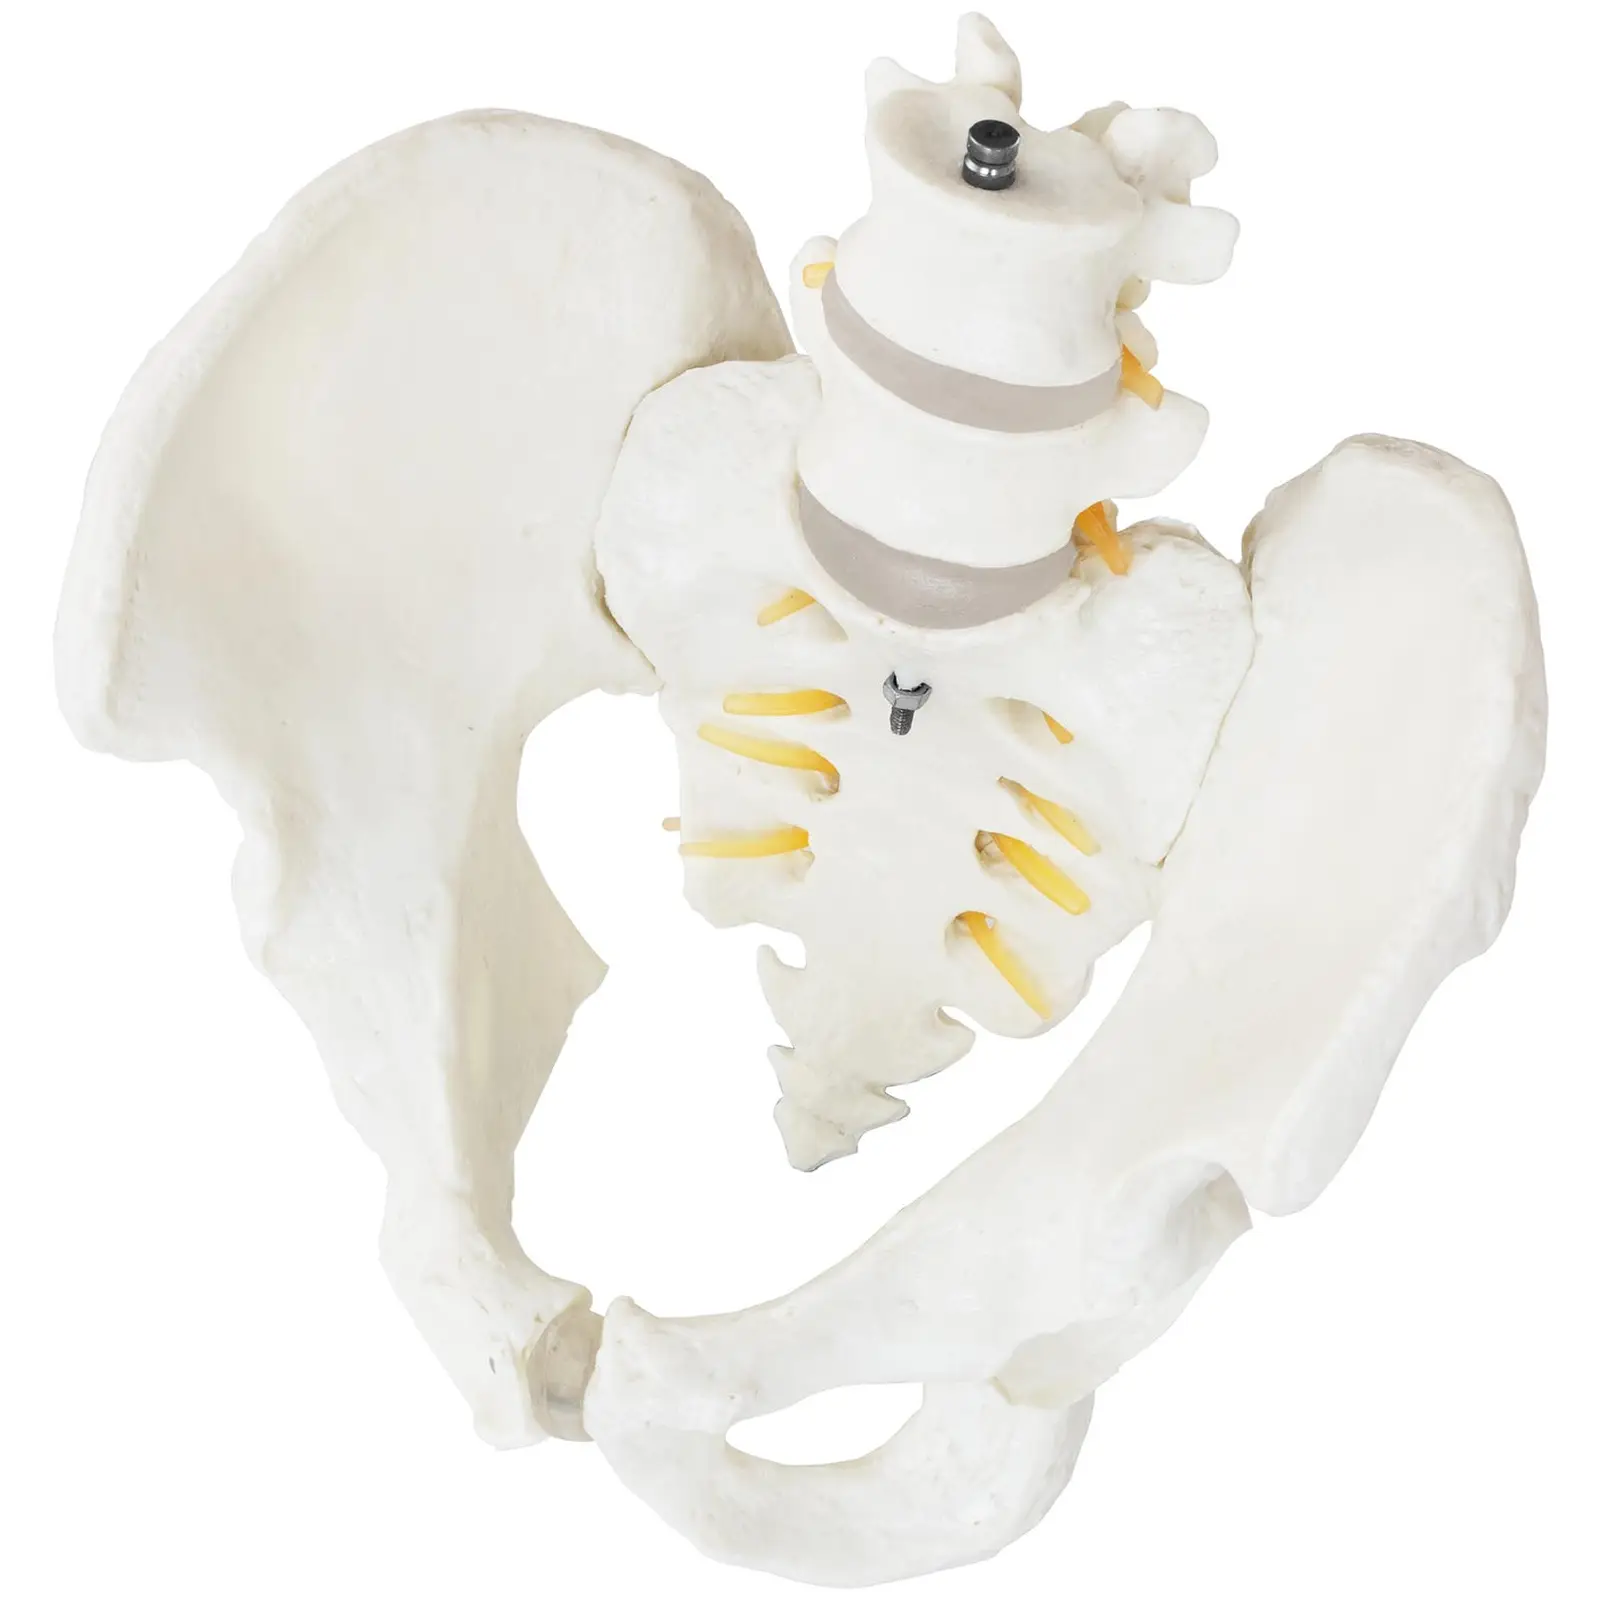 Maquette anatomique du bassin humain avec vertèbres lombaires - homme